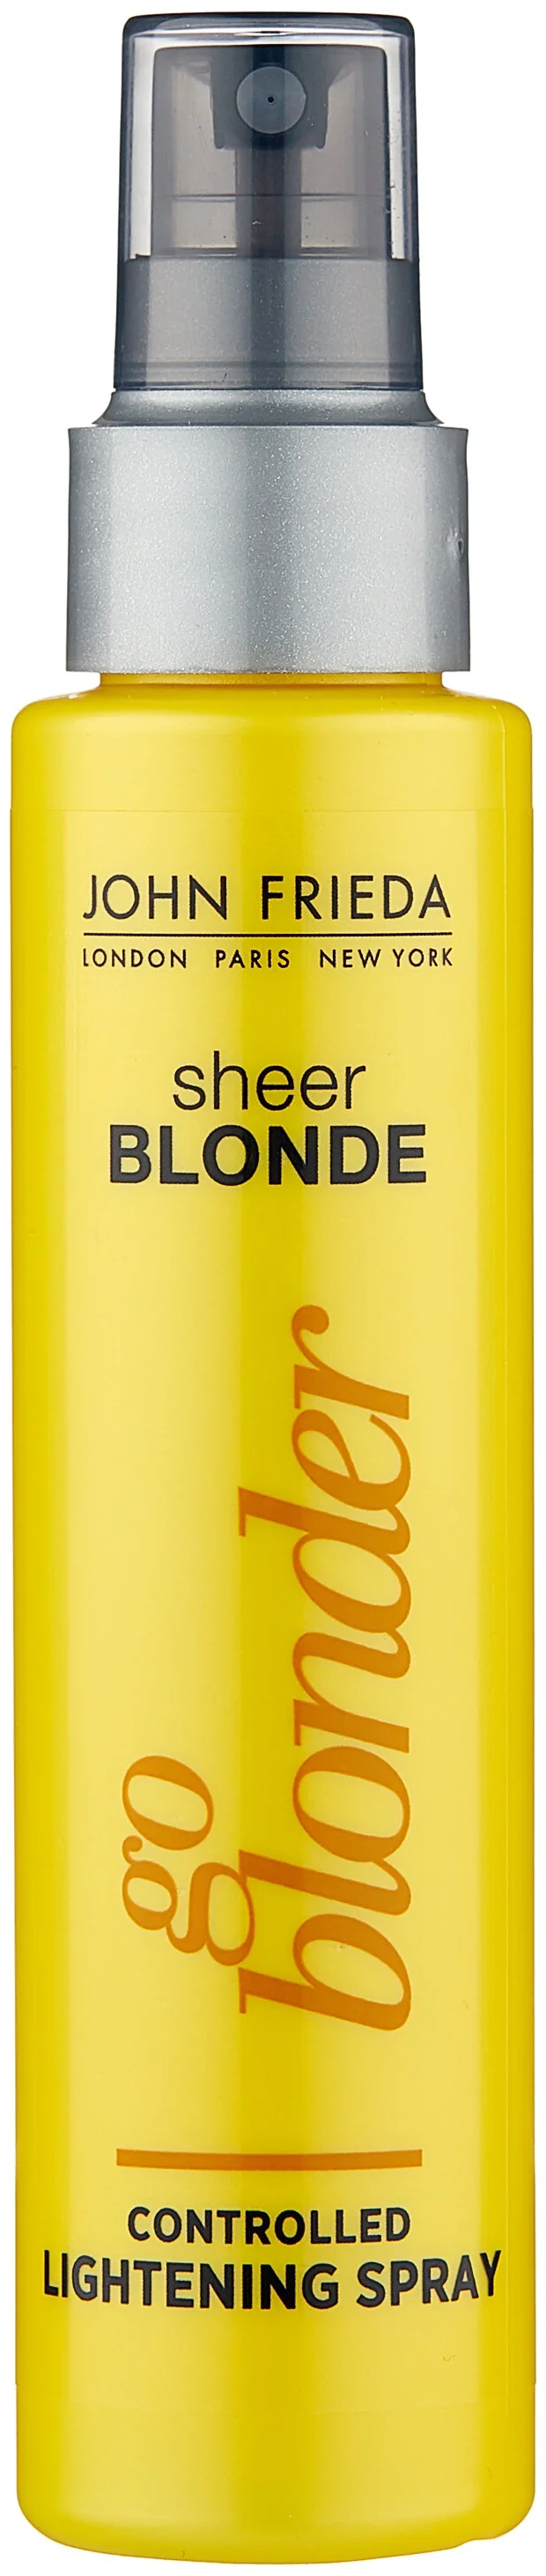 John Frieda Sheer Blonde Go Blonder Controlled lightening - потребности кожи головы и волос: тонирование